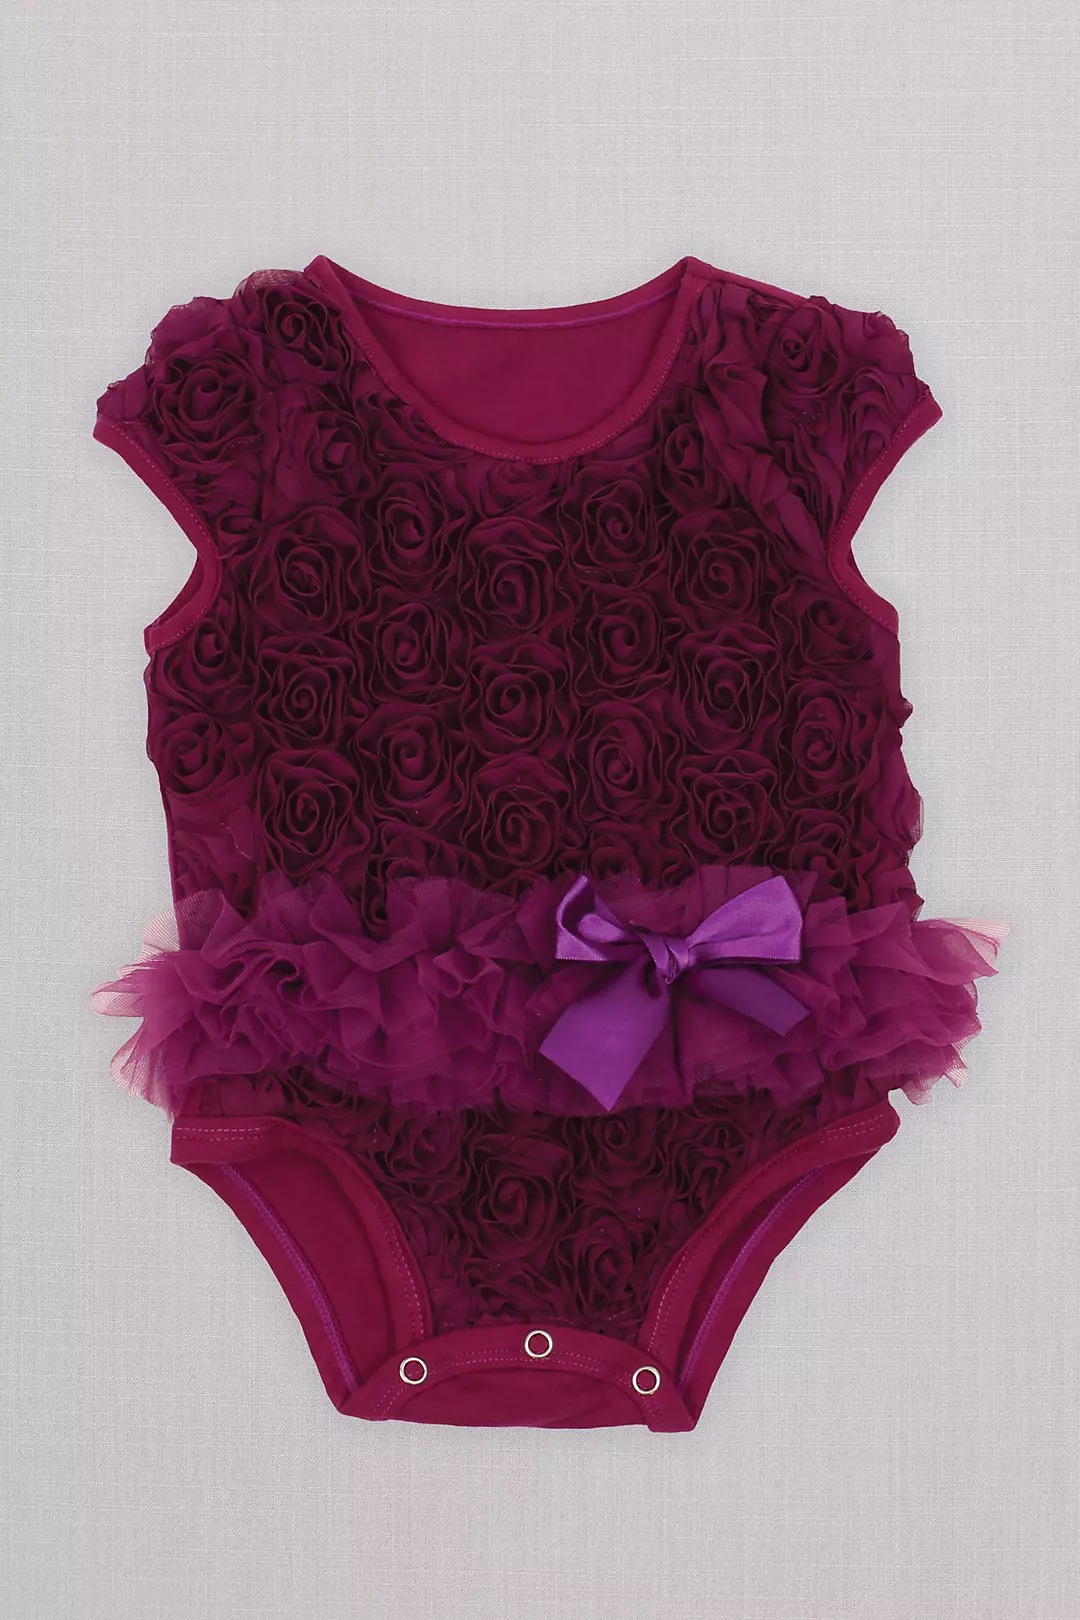 Ribbon Rosette Infant Flower Girl Tutu Bodysuit Image